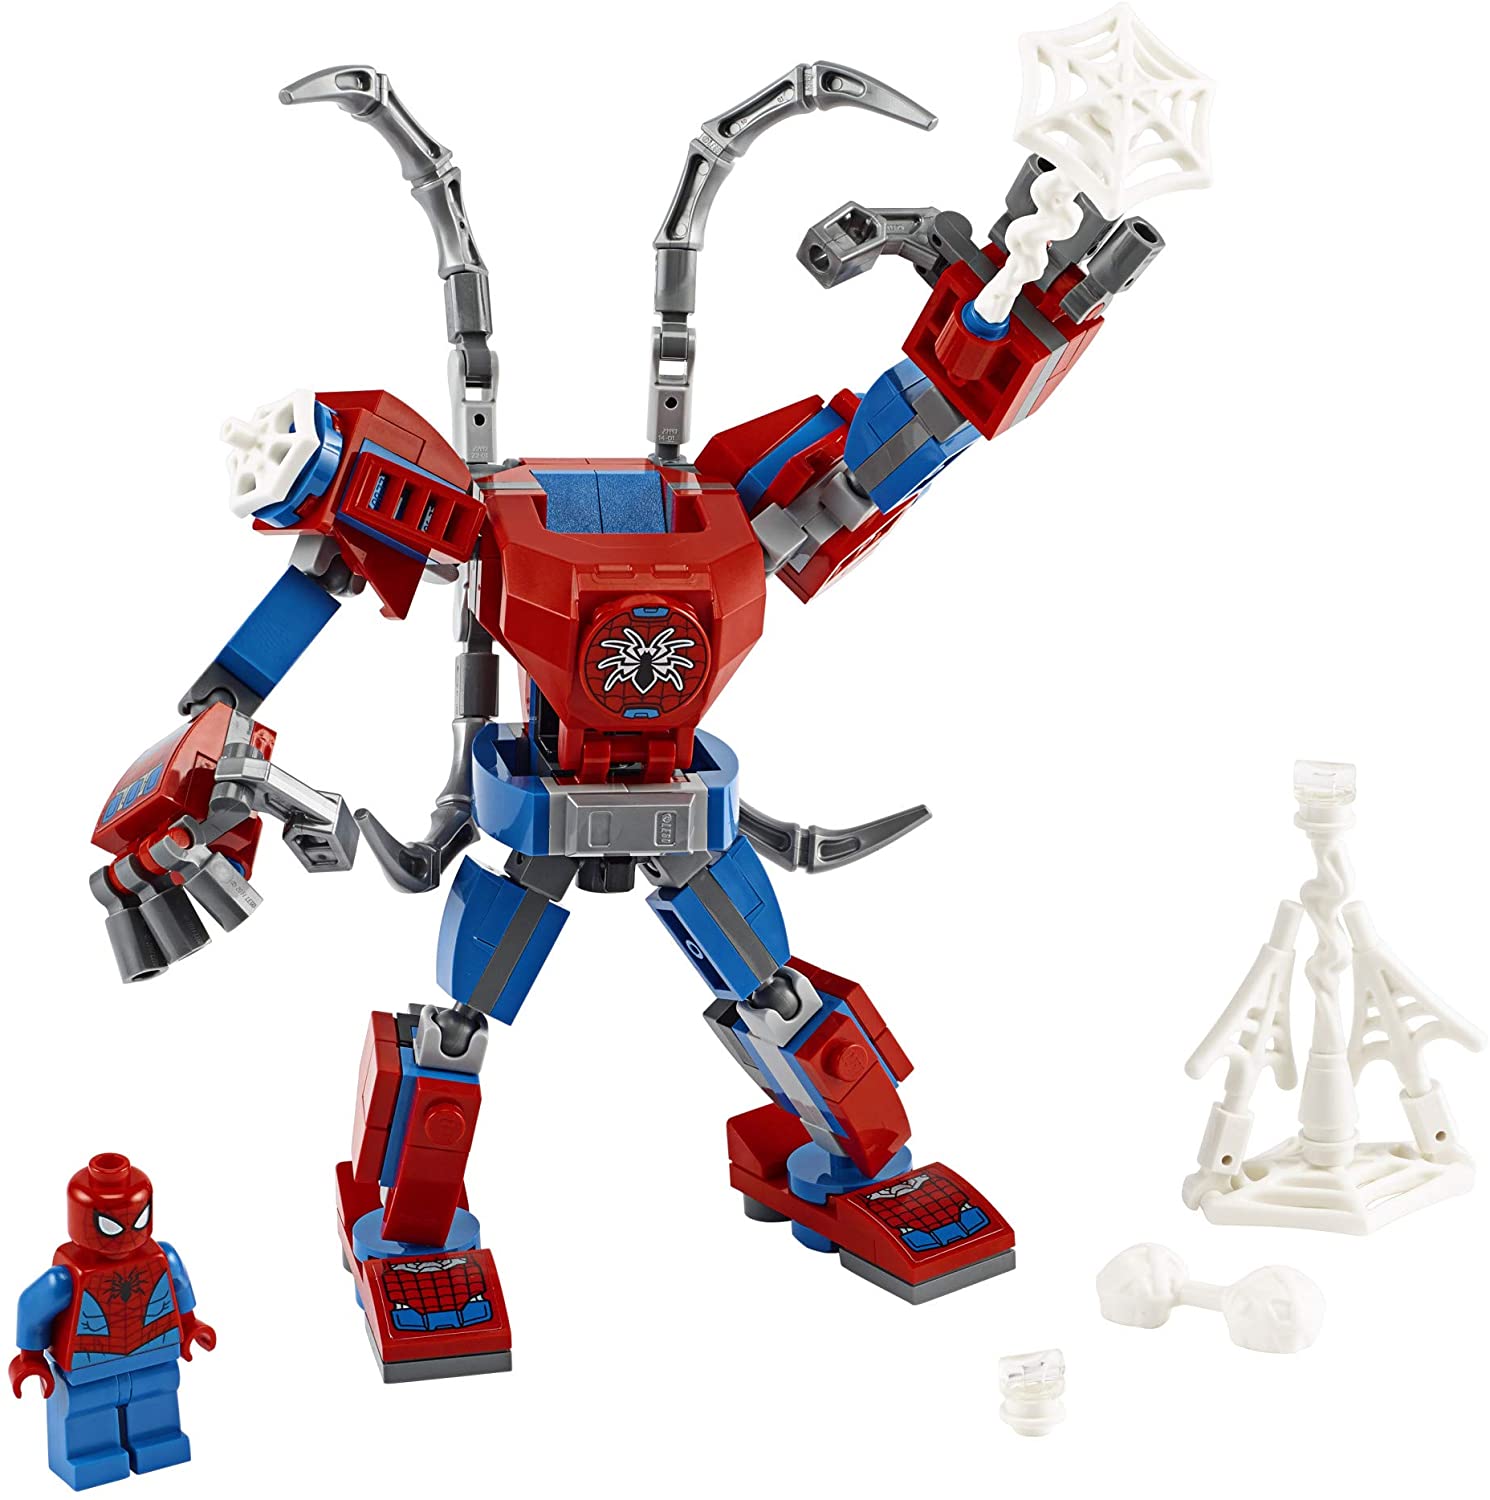 spider man lego marvel avengers